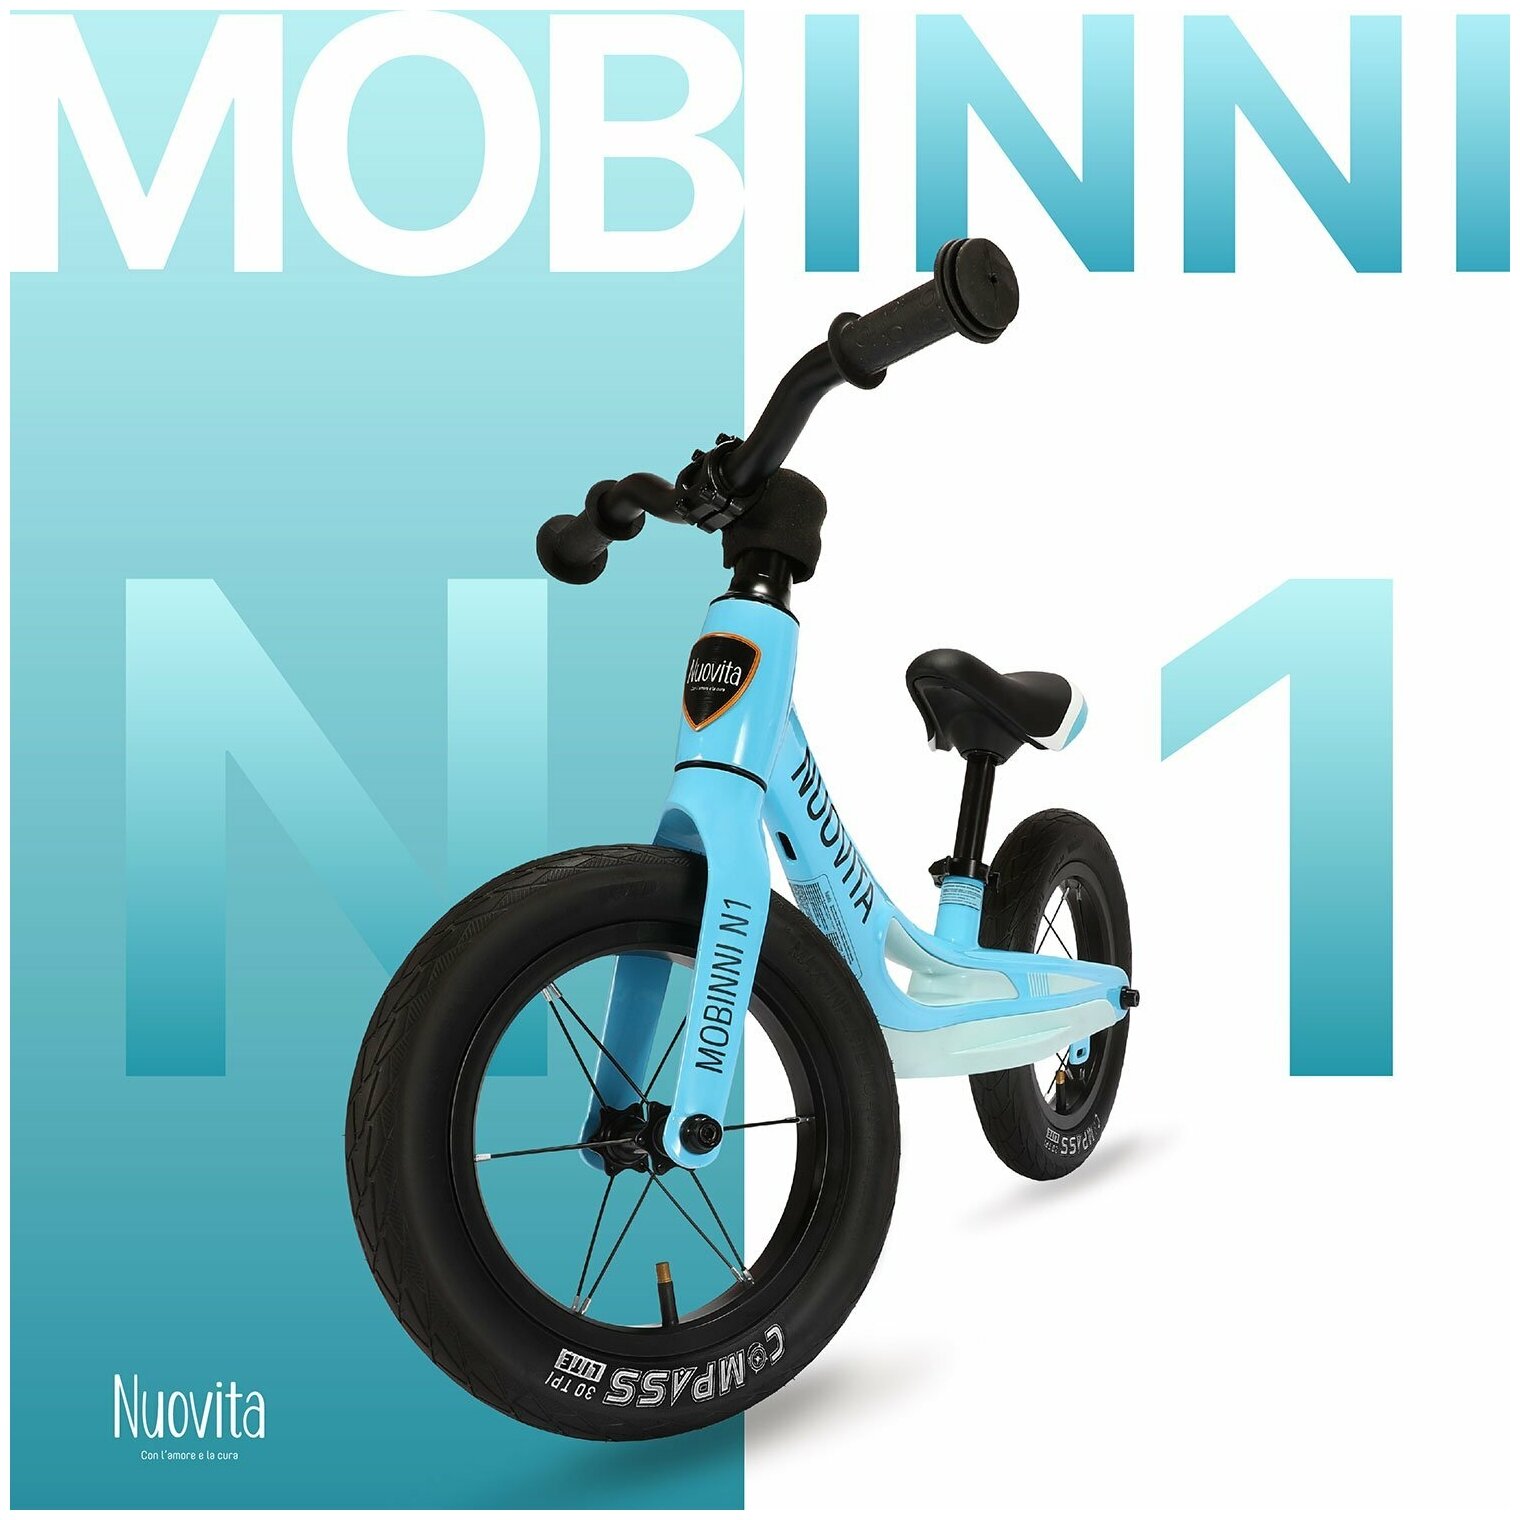  Nuovita Mobinni N1 Blu/